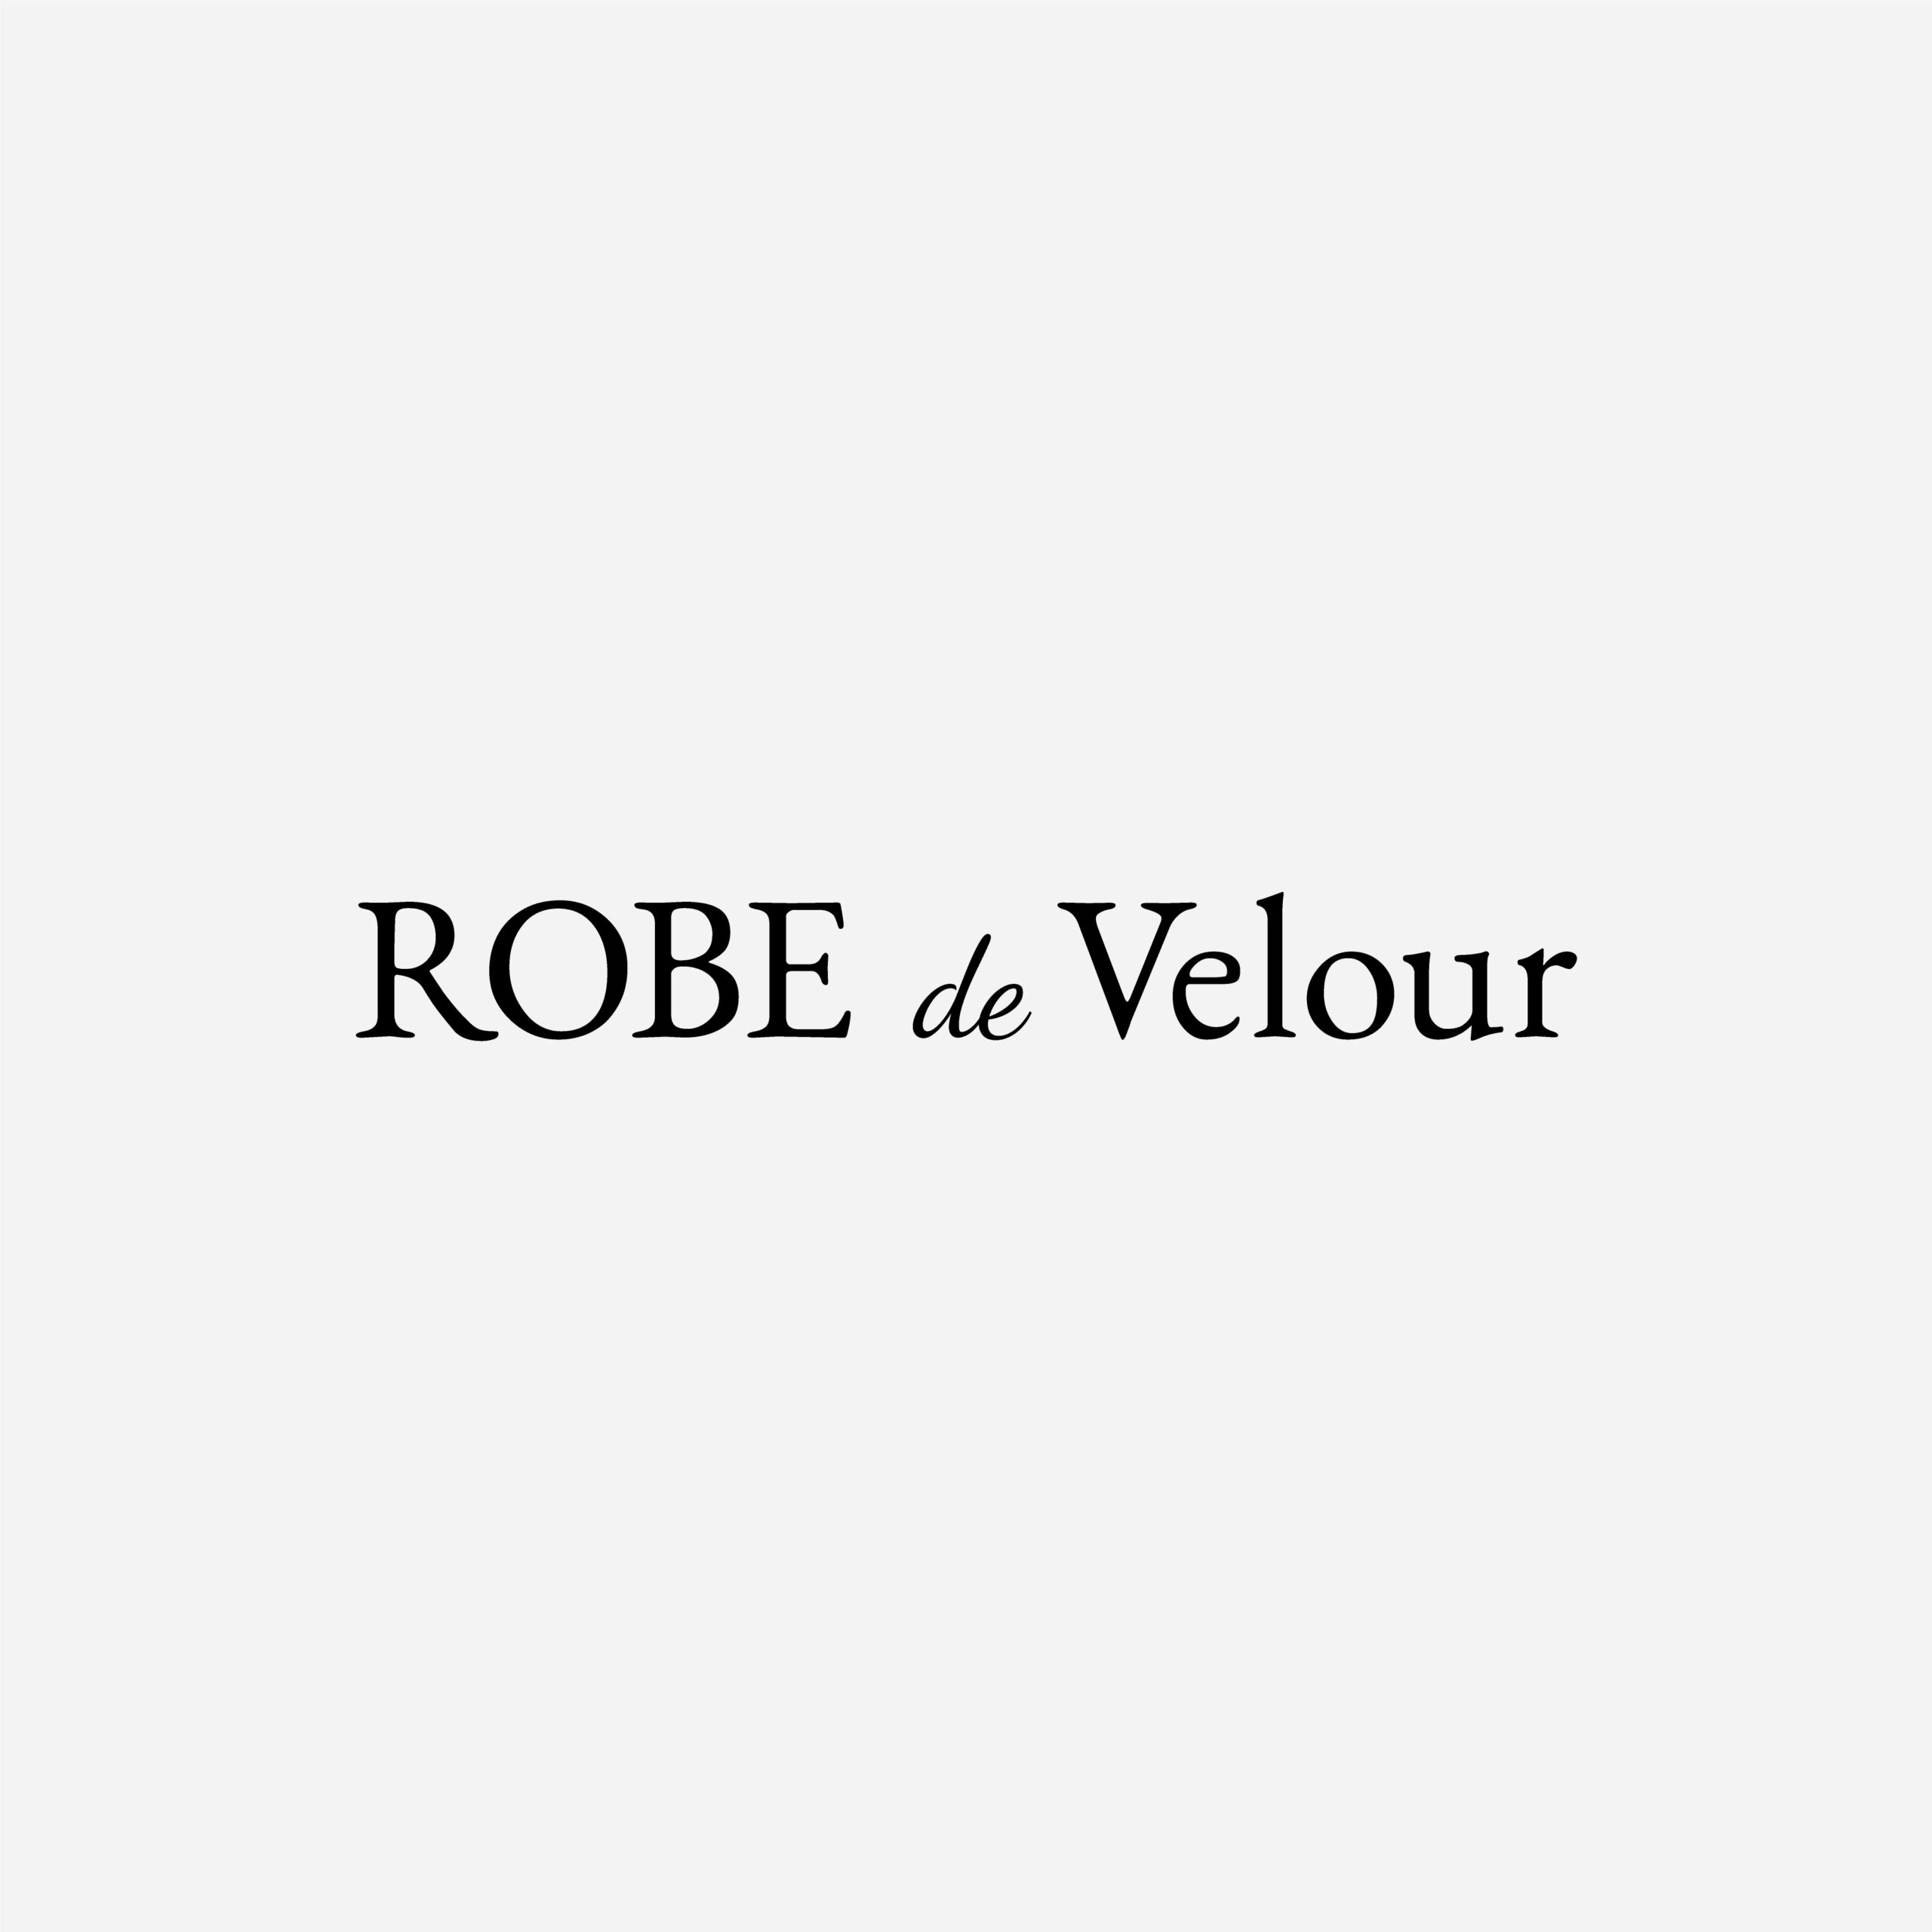 画像未登録時の代替え画像のROBE de Velour OMORIのロゴバナー